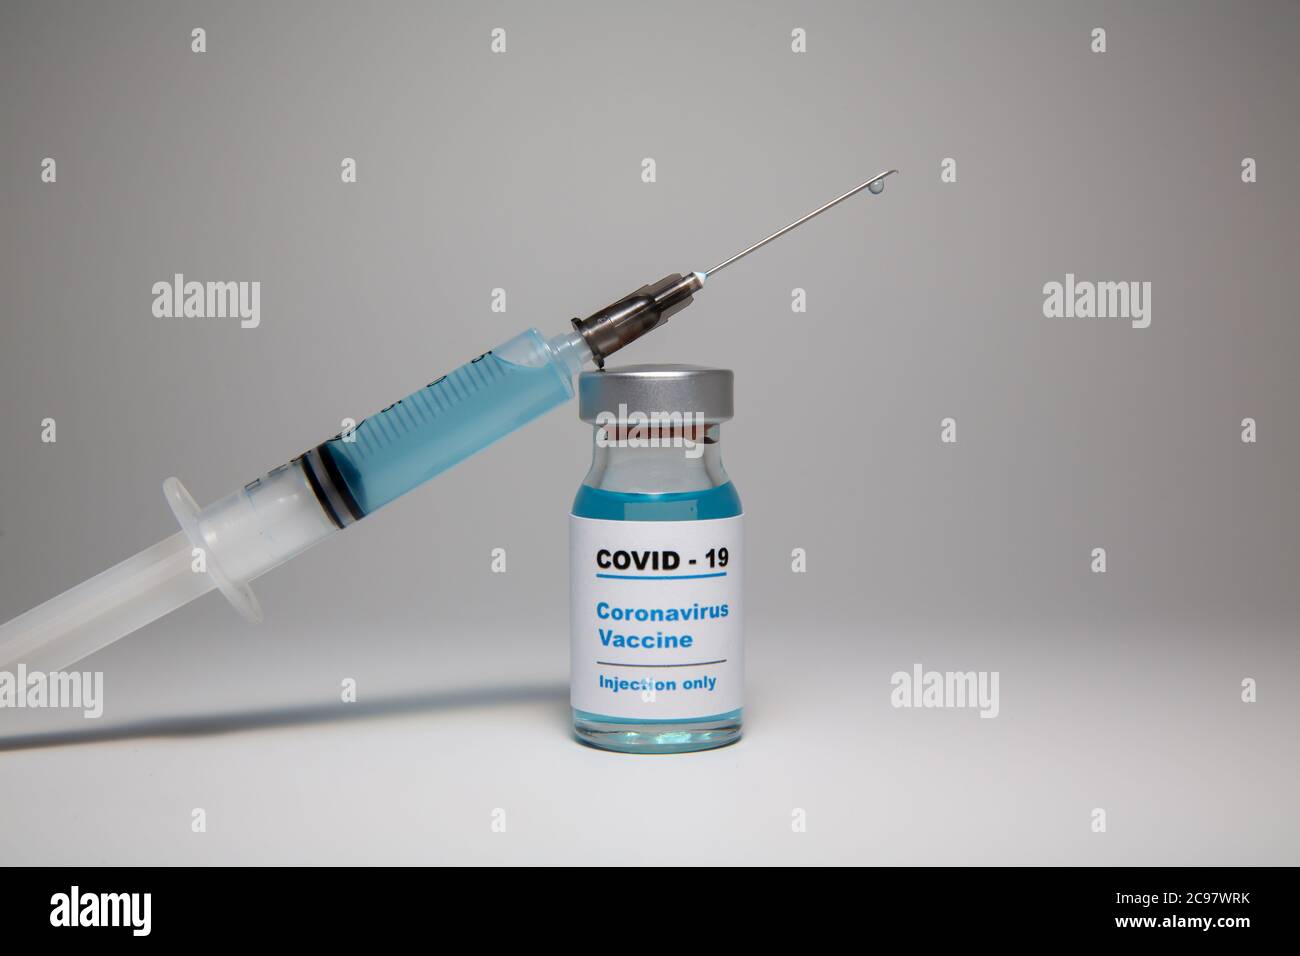 Petite bouteille de vaccin (flacon) avec une étiquette portant la mention « Covid - 19 Corona virus Vaccine injection Only » et une seringue médicale avec un vaccin d Banque D'Images